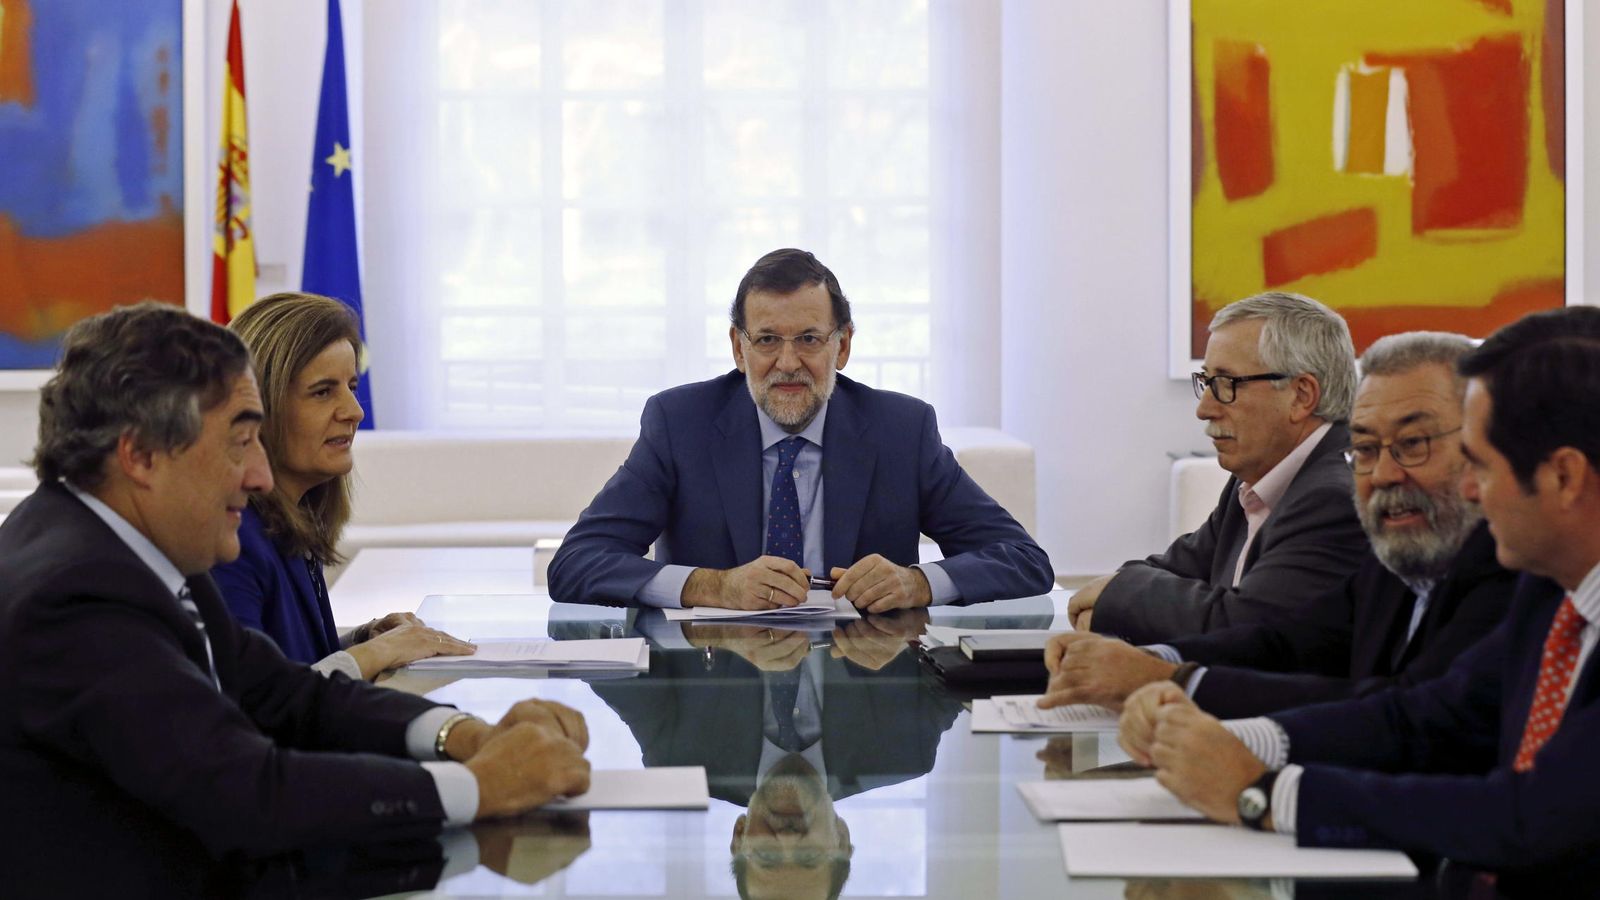 Foto: El presidente del Gobierno, Mariano Rajoy (c), la ministra de Empleo, Fátima Báñez (2i), los presidentes de CEOE y CEPYME, Juan Rosell (i) y Antonio Garamendi (d), Cándido Méndez (2d) e Ignacio Fernández Toxo.